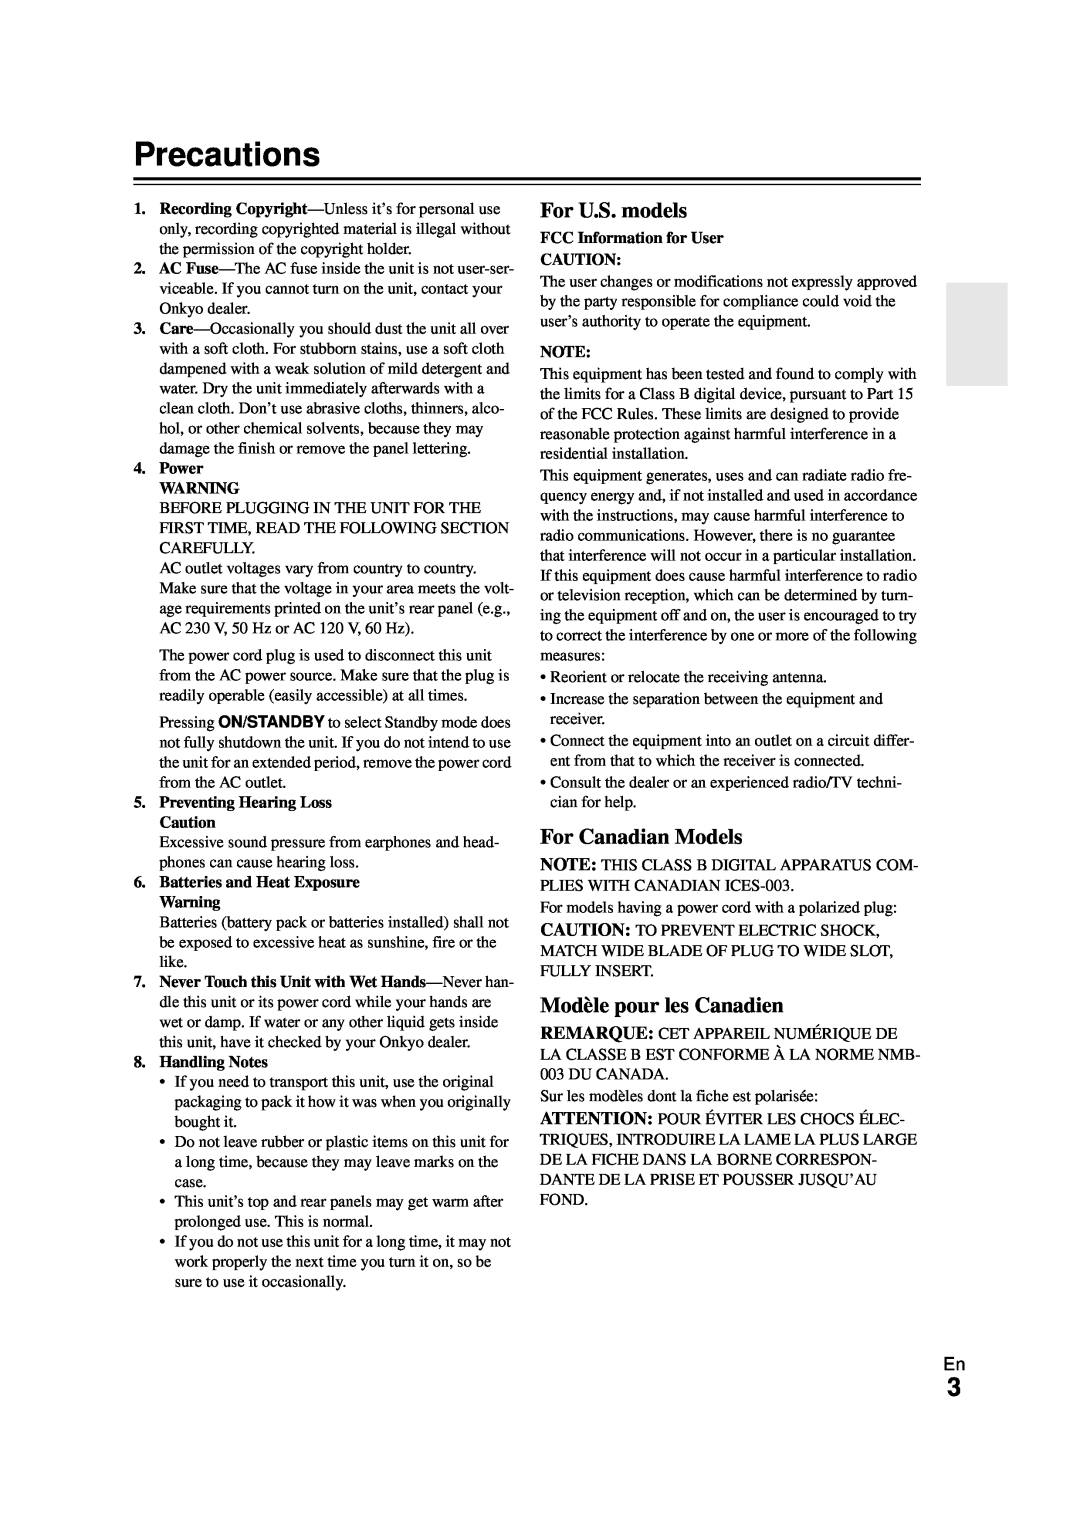 Onkyo HT-RC270 instruction manual Precautions, For U.S. models, For Canadian Models, Modèle pour les Canadien 